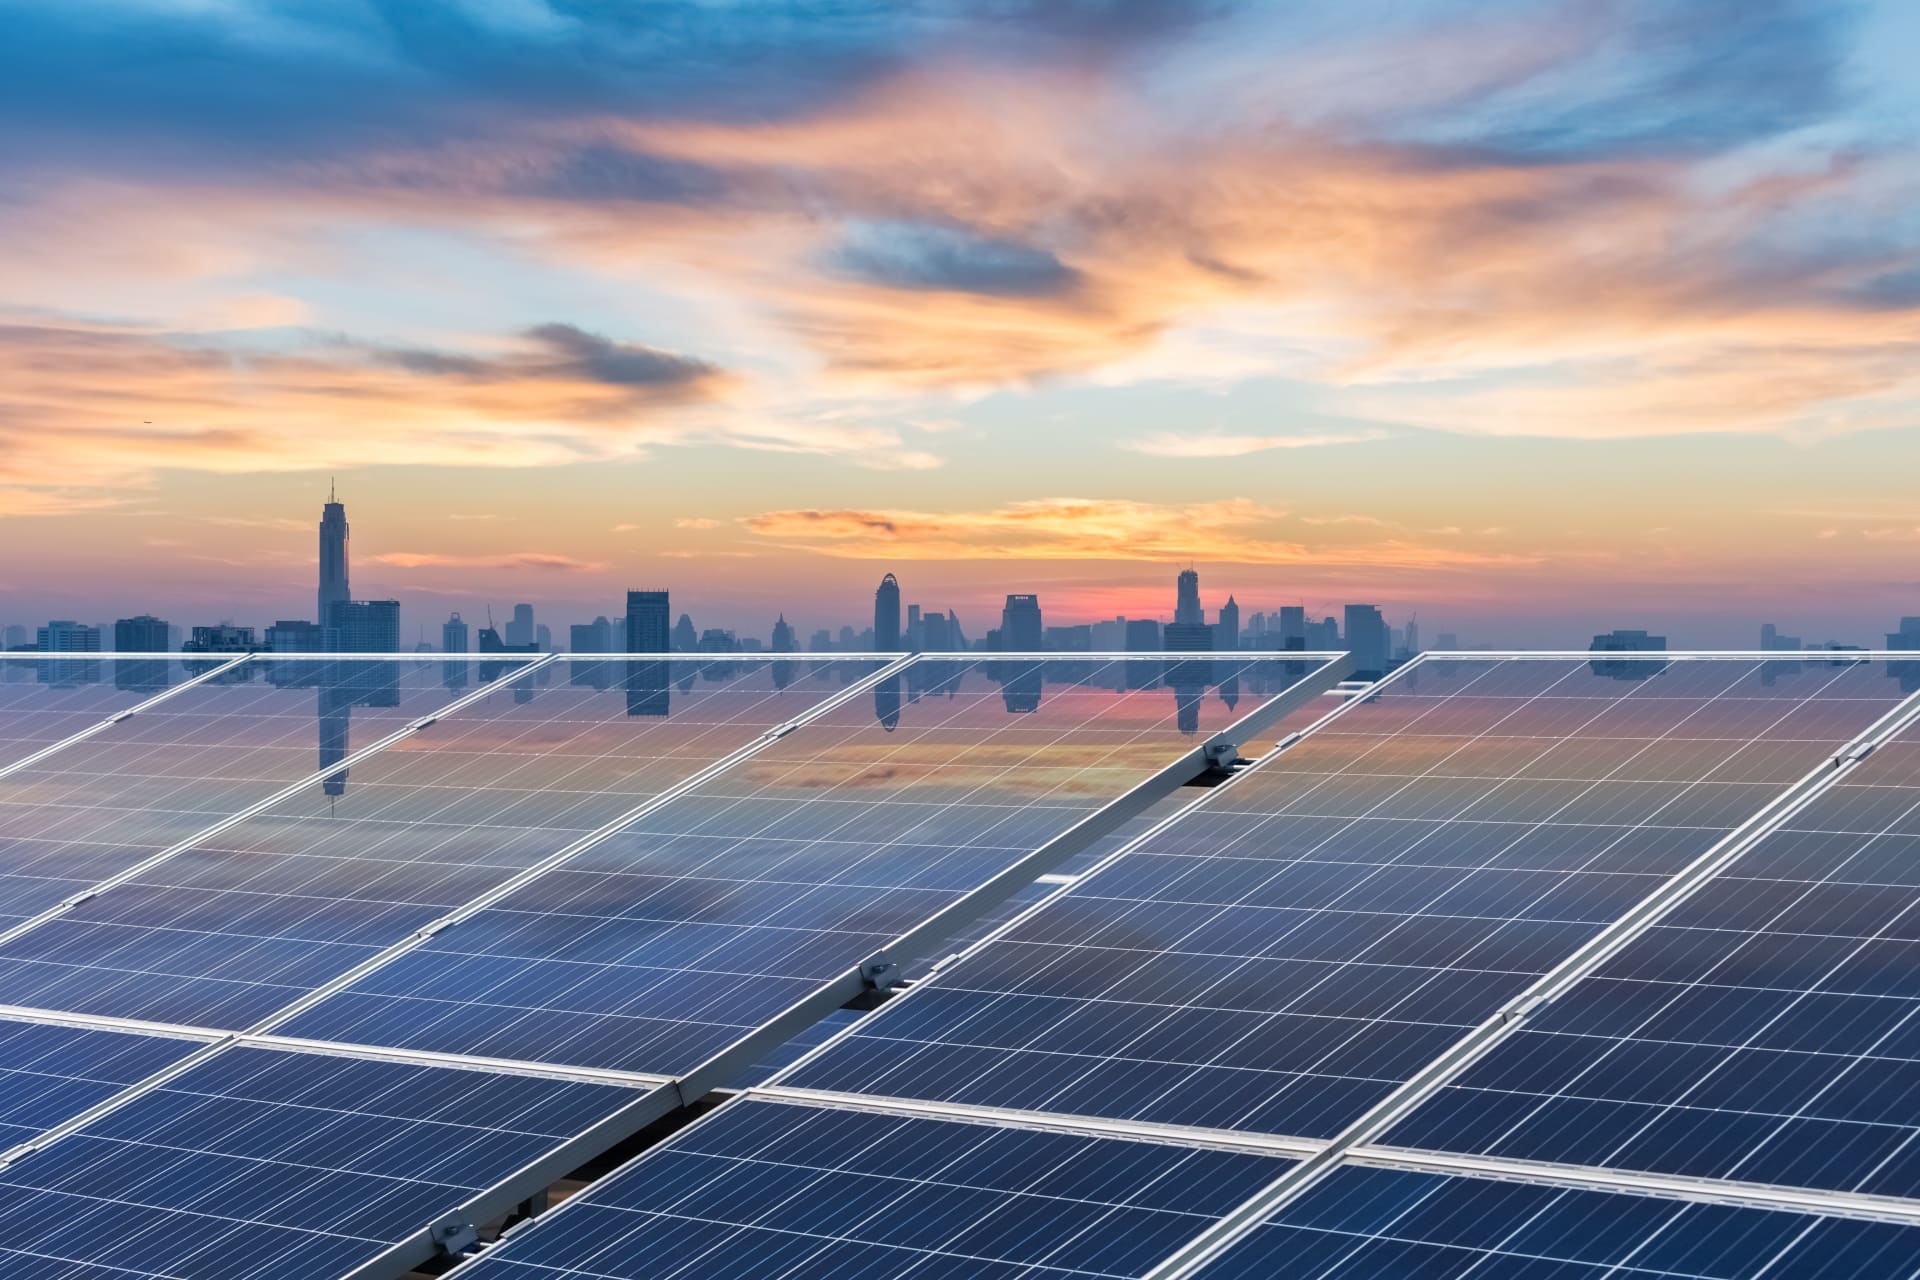 roof-solar-energy-in-sunset-2021-08-26-17-52-56-utc (1) (1)